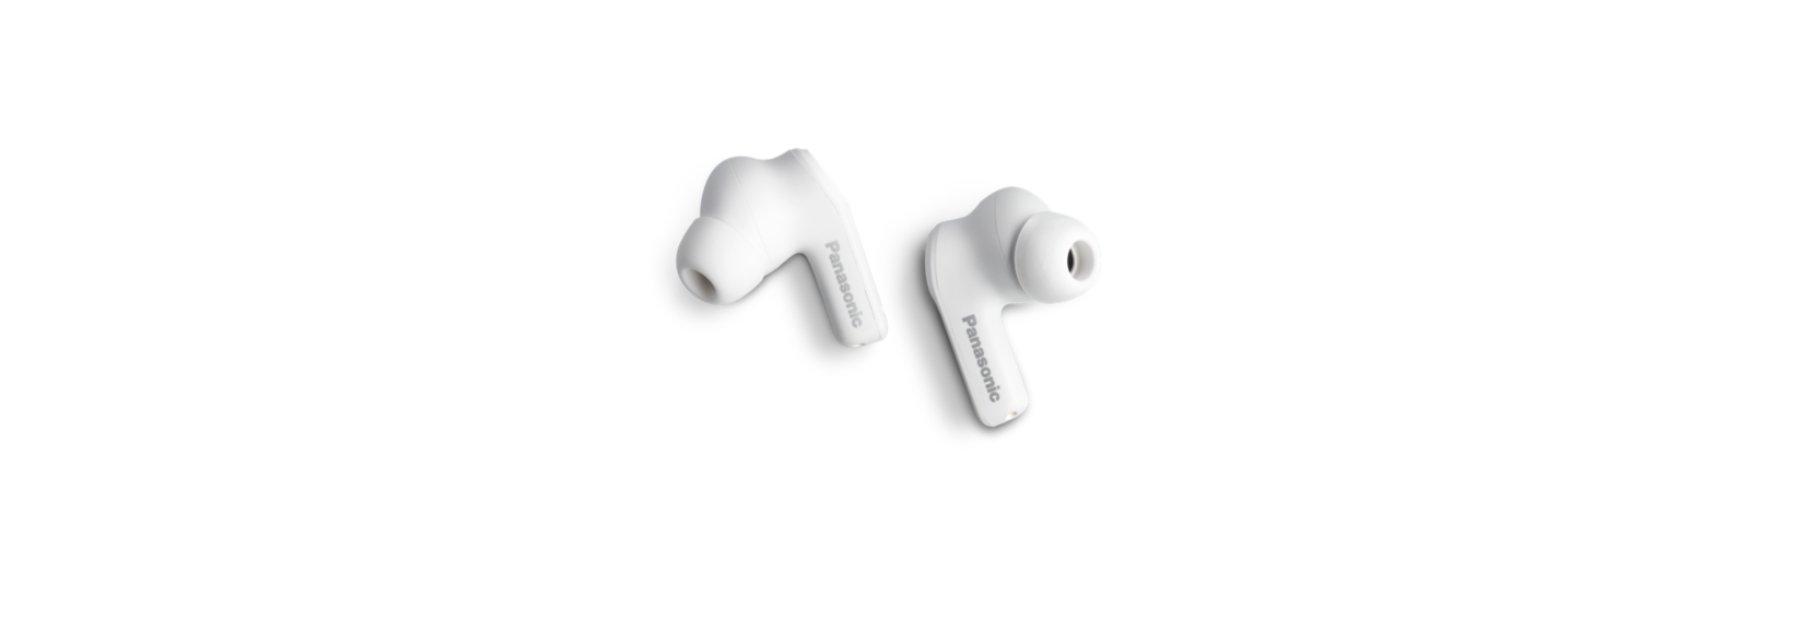 Panasonic  Panasonic RZ-B210W Kopfhörer Kabellos im Ohr AnrufeMusik Bluetooth Weiß 